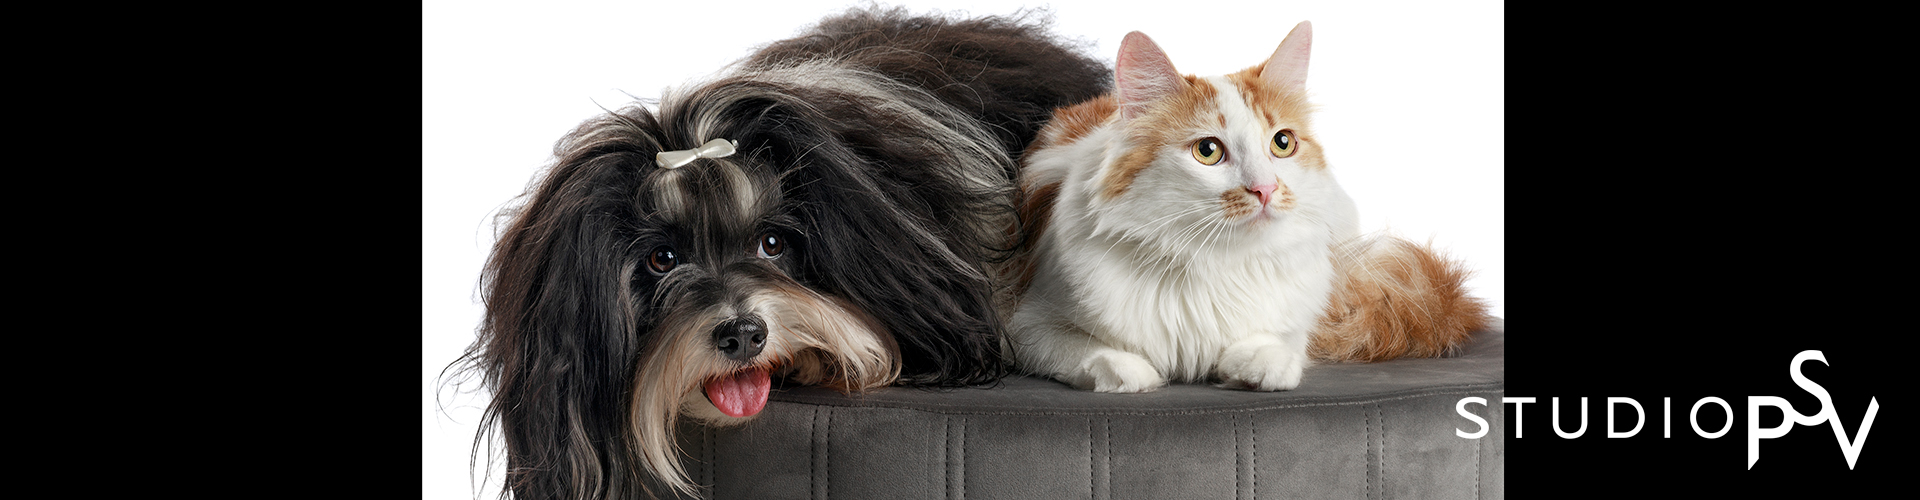 Koira ja kissa makaavat vierekkäin rahilla